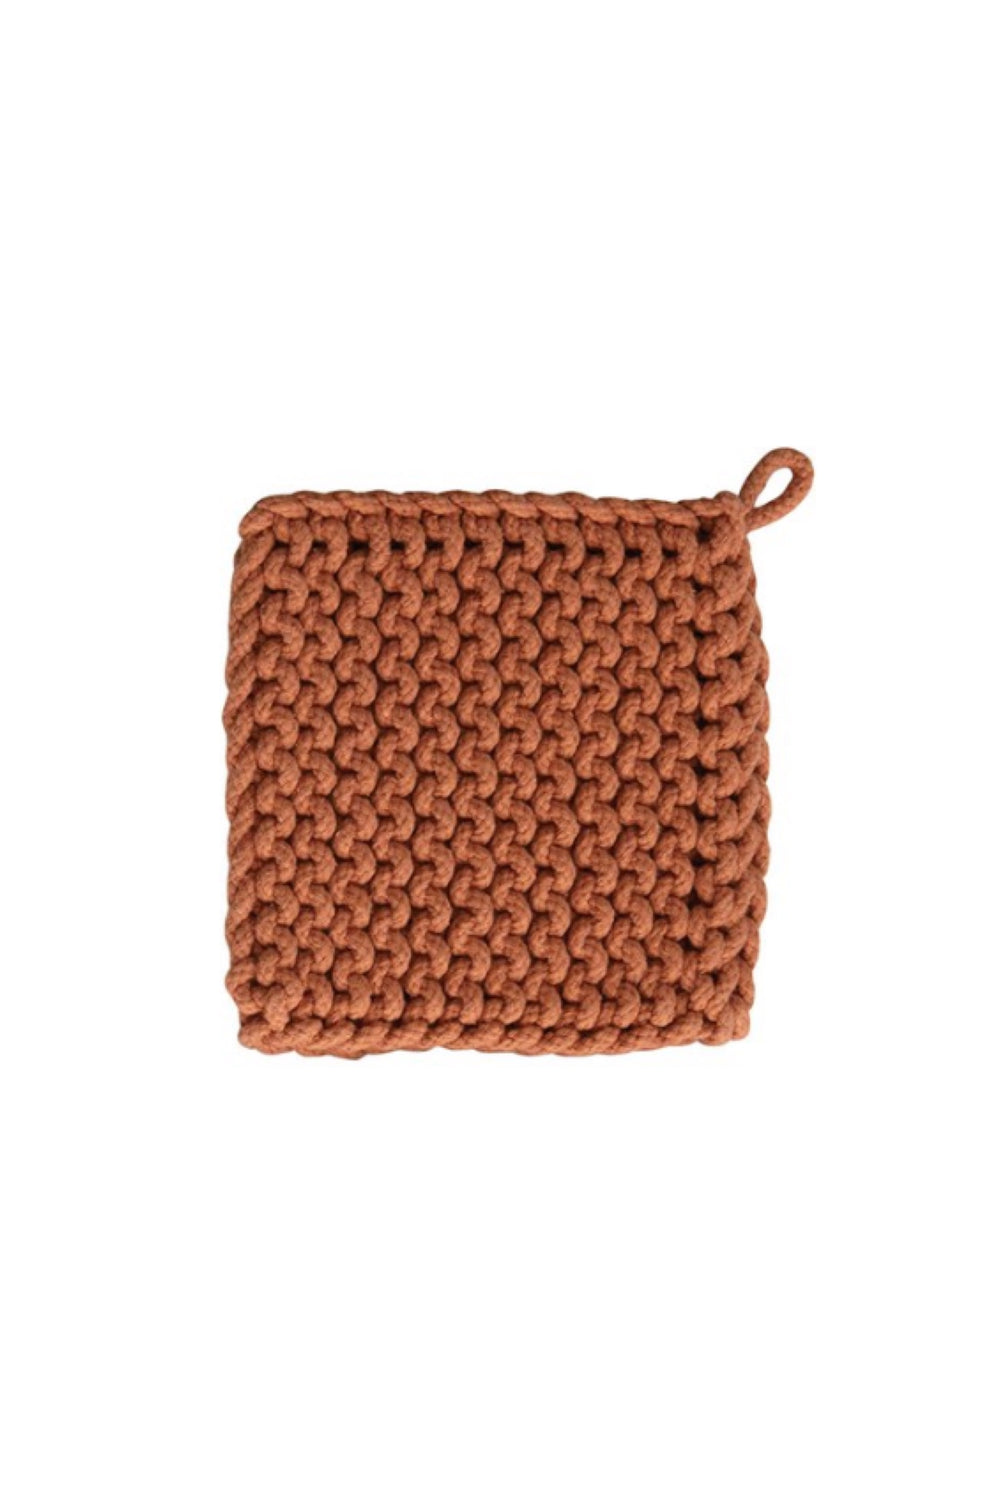 Crochet Pot Holder 001